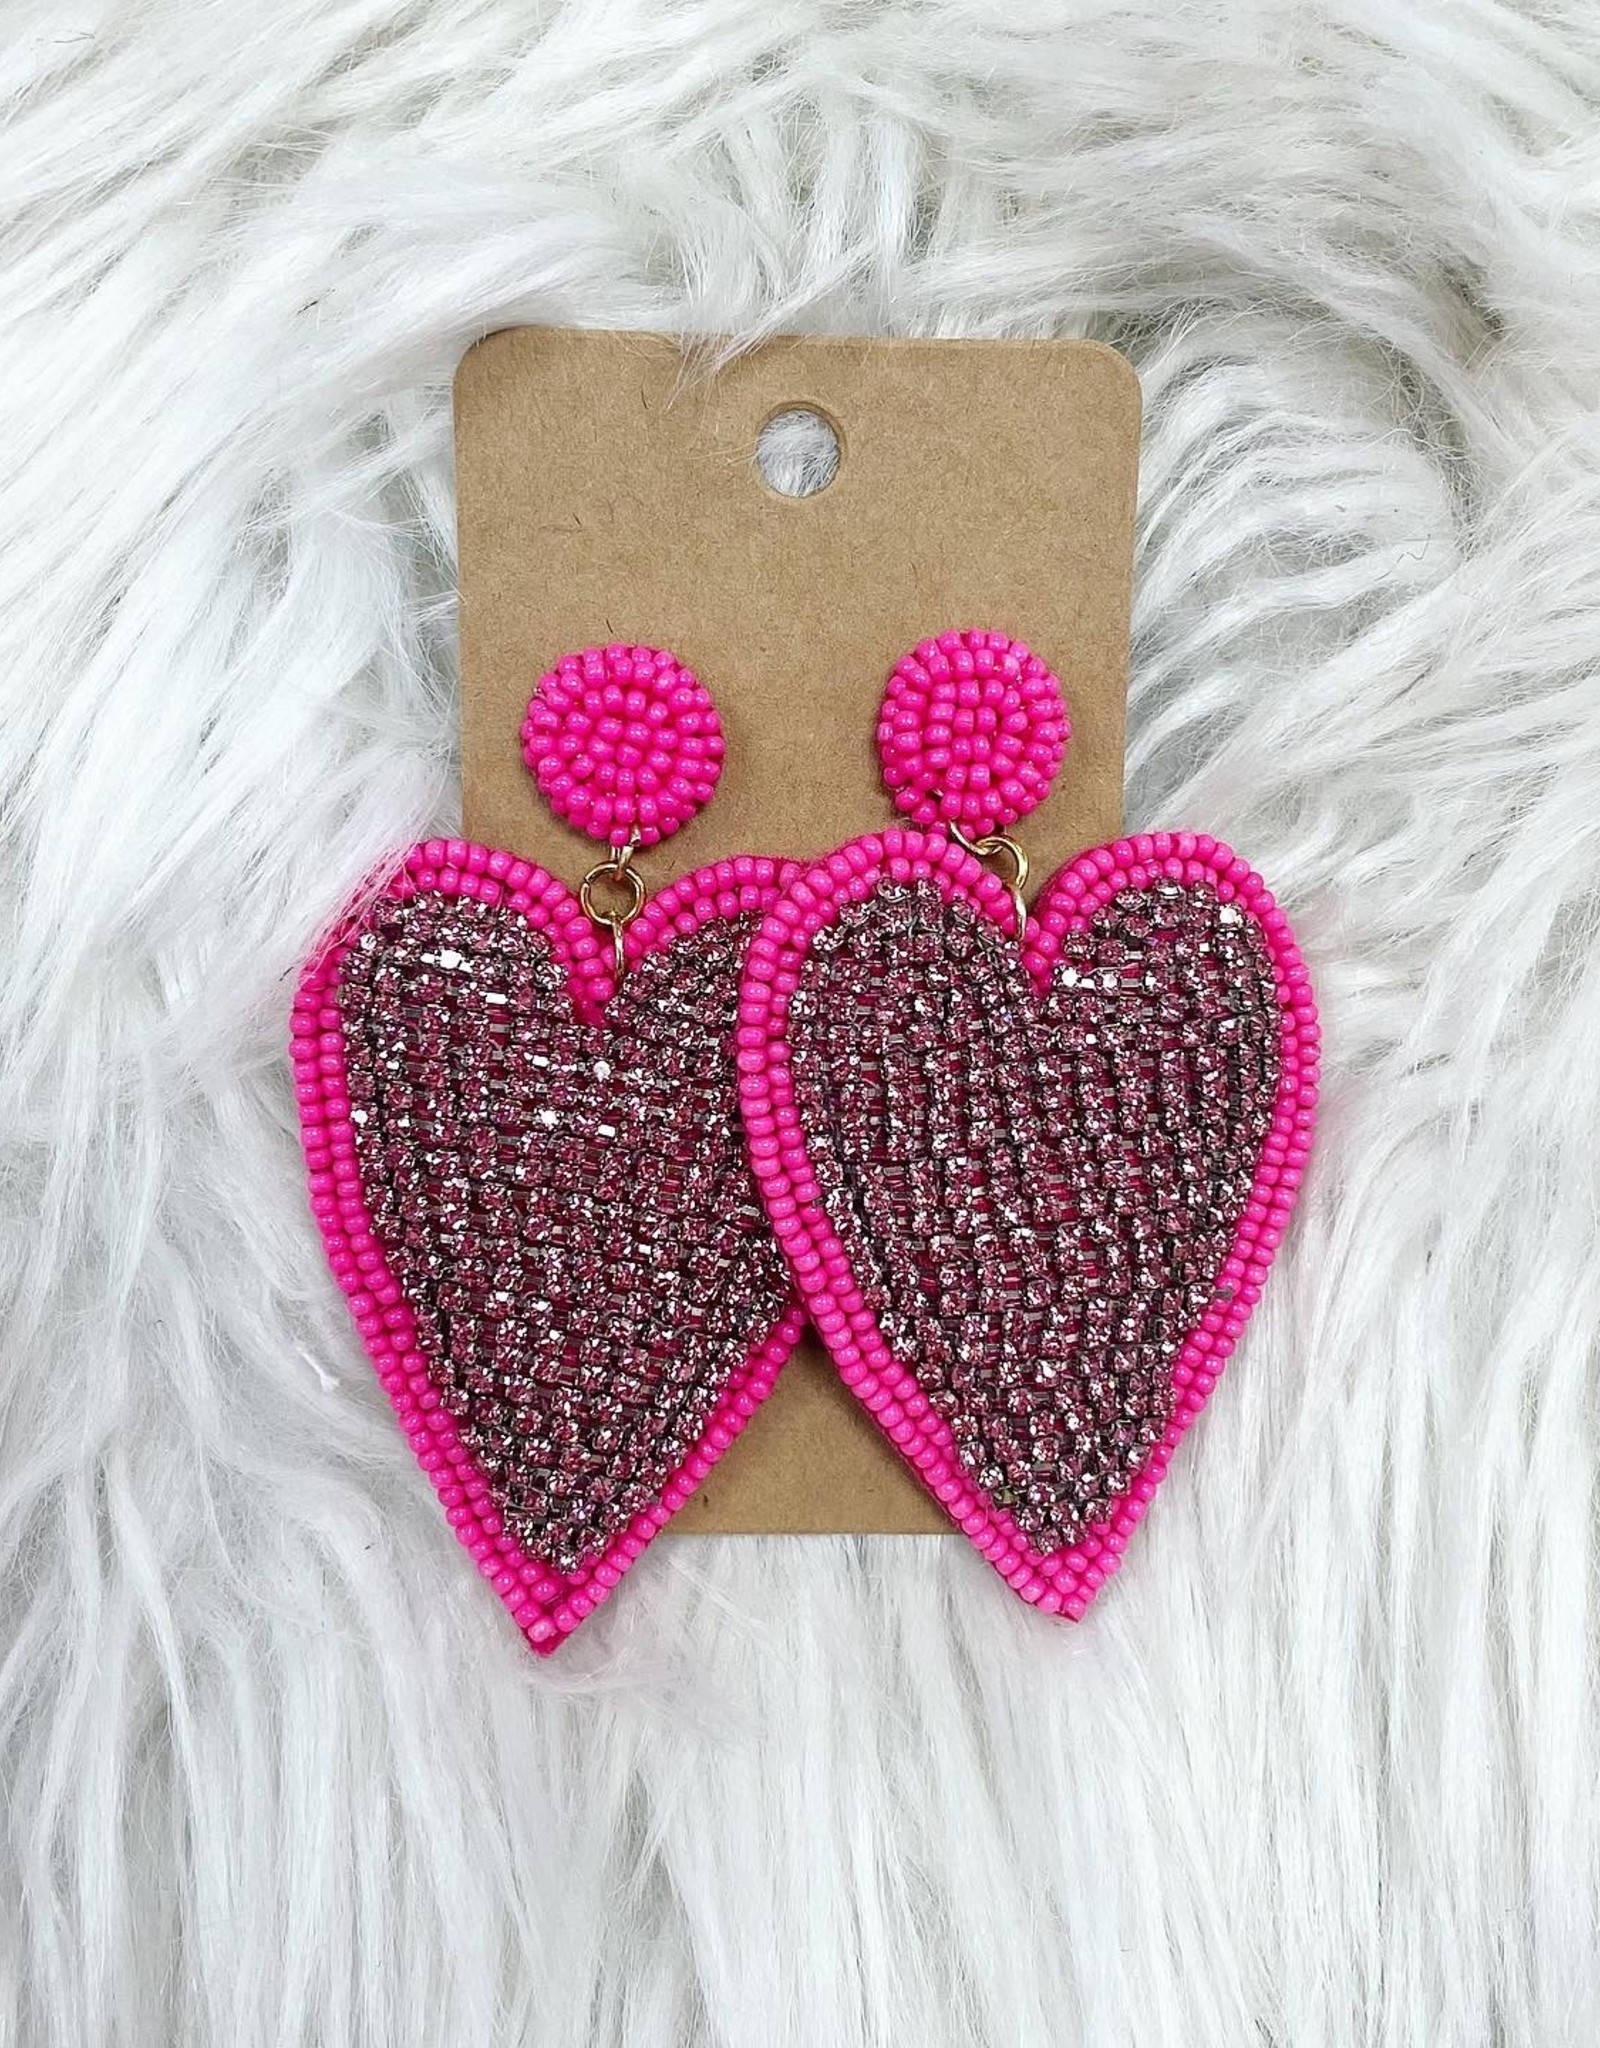 Rhinestone Heart Earring in Hot Pink